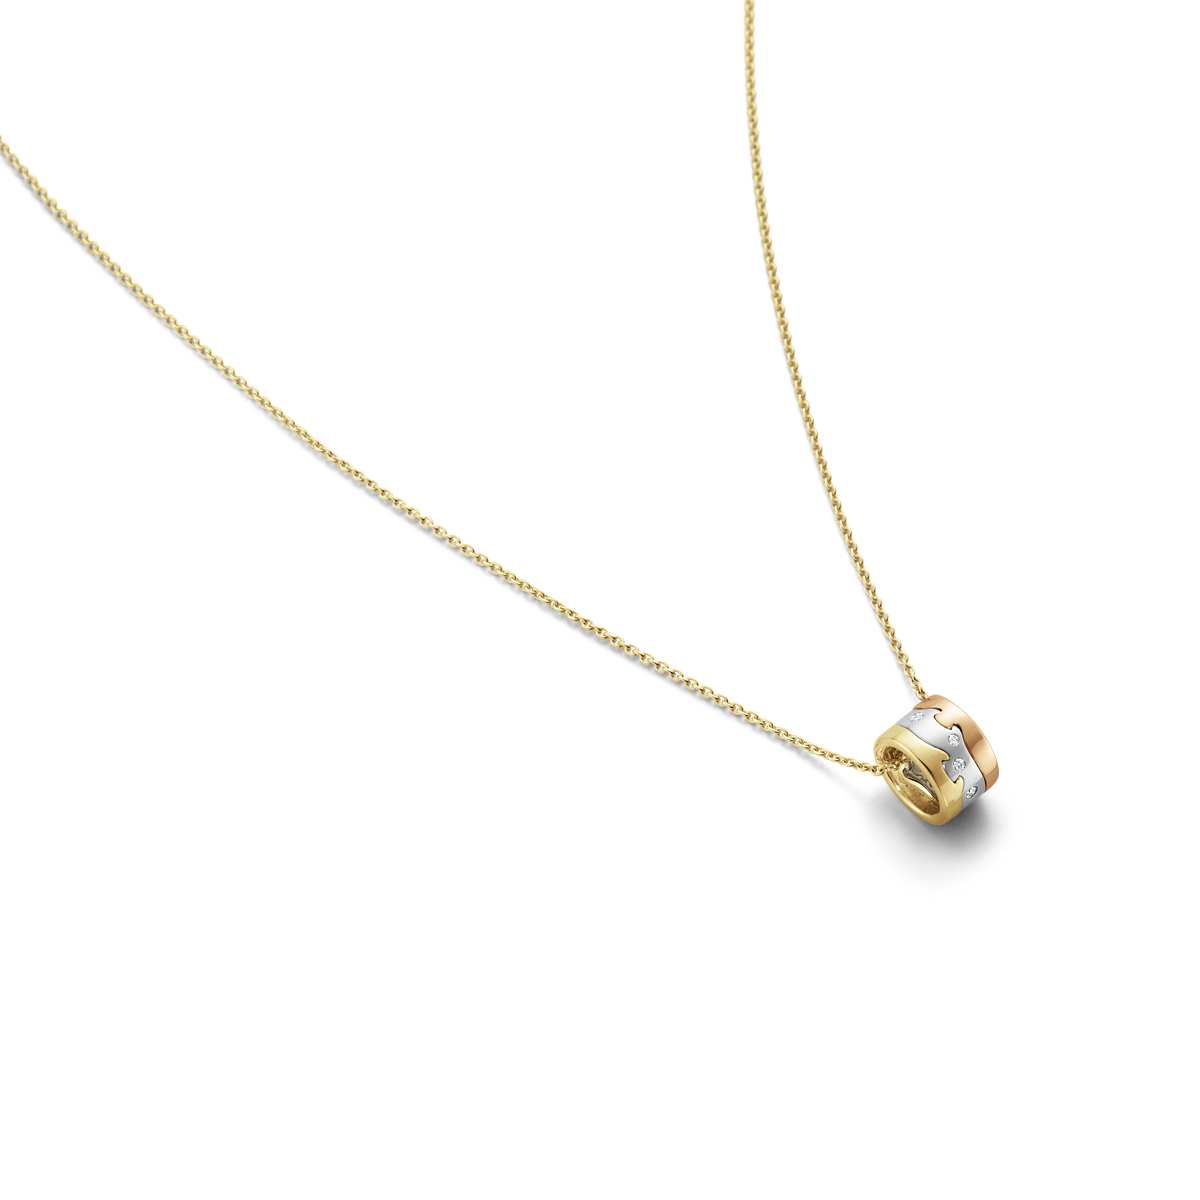 Fusion halskæde med vedhæng, diamanter -  rosaguld, hvidguld og guld fra Georg Jensen